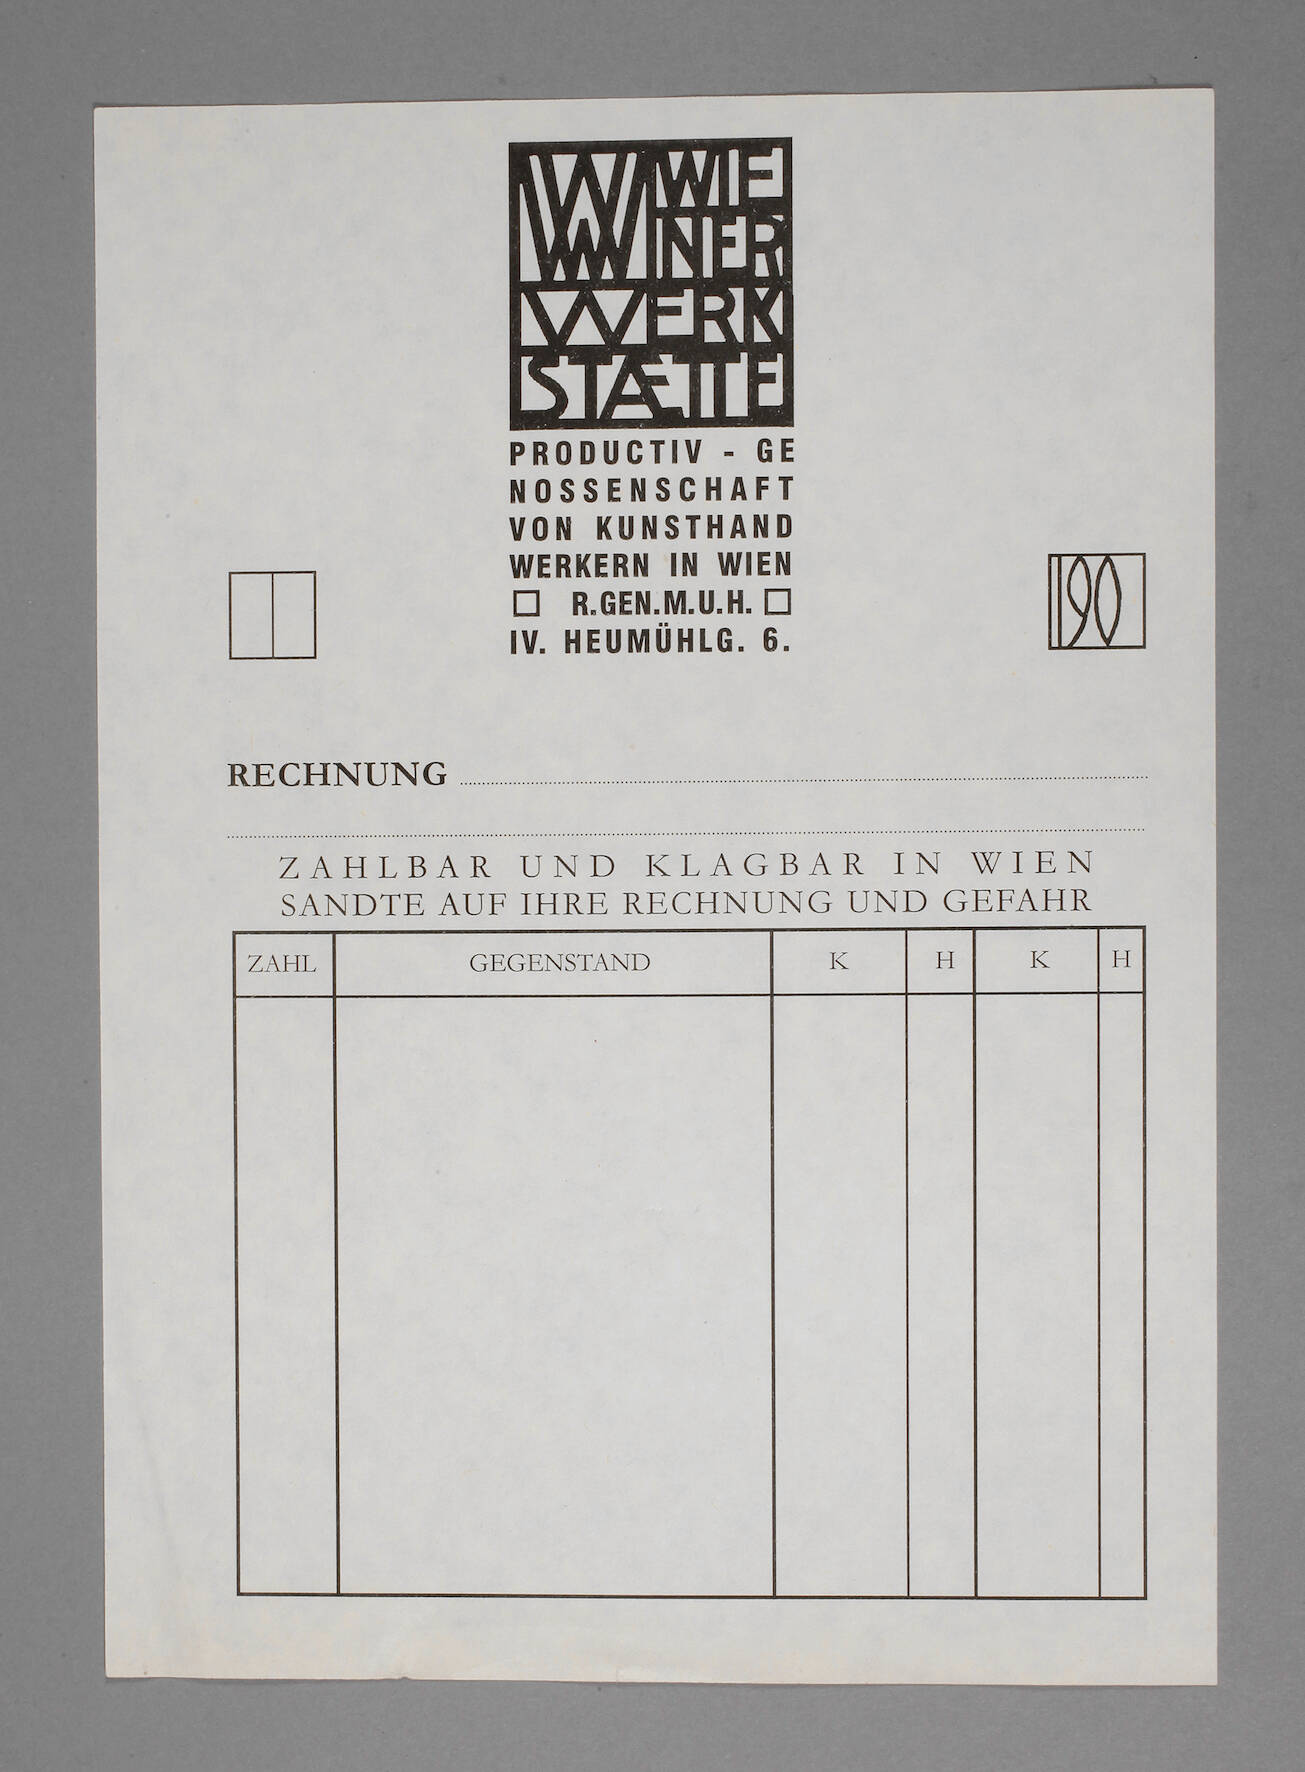 Blankorechnungsformular der Wiener Werkstätte